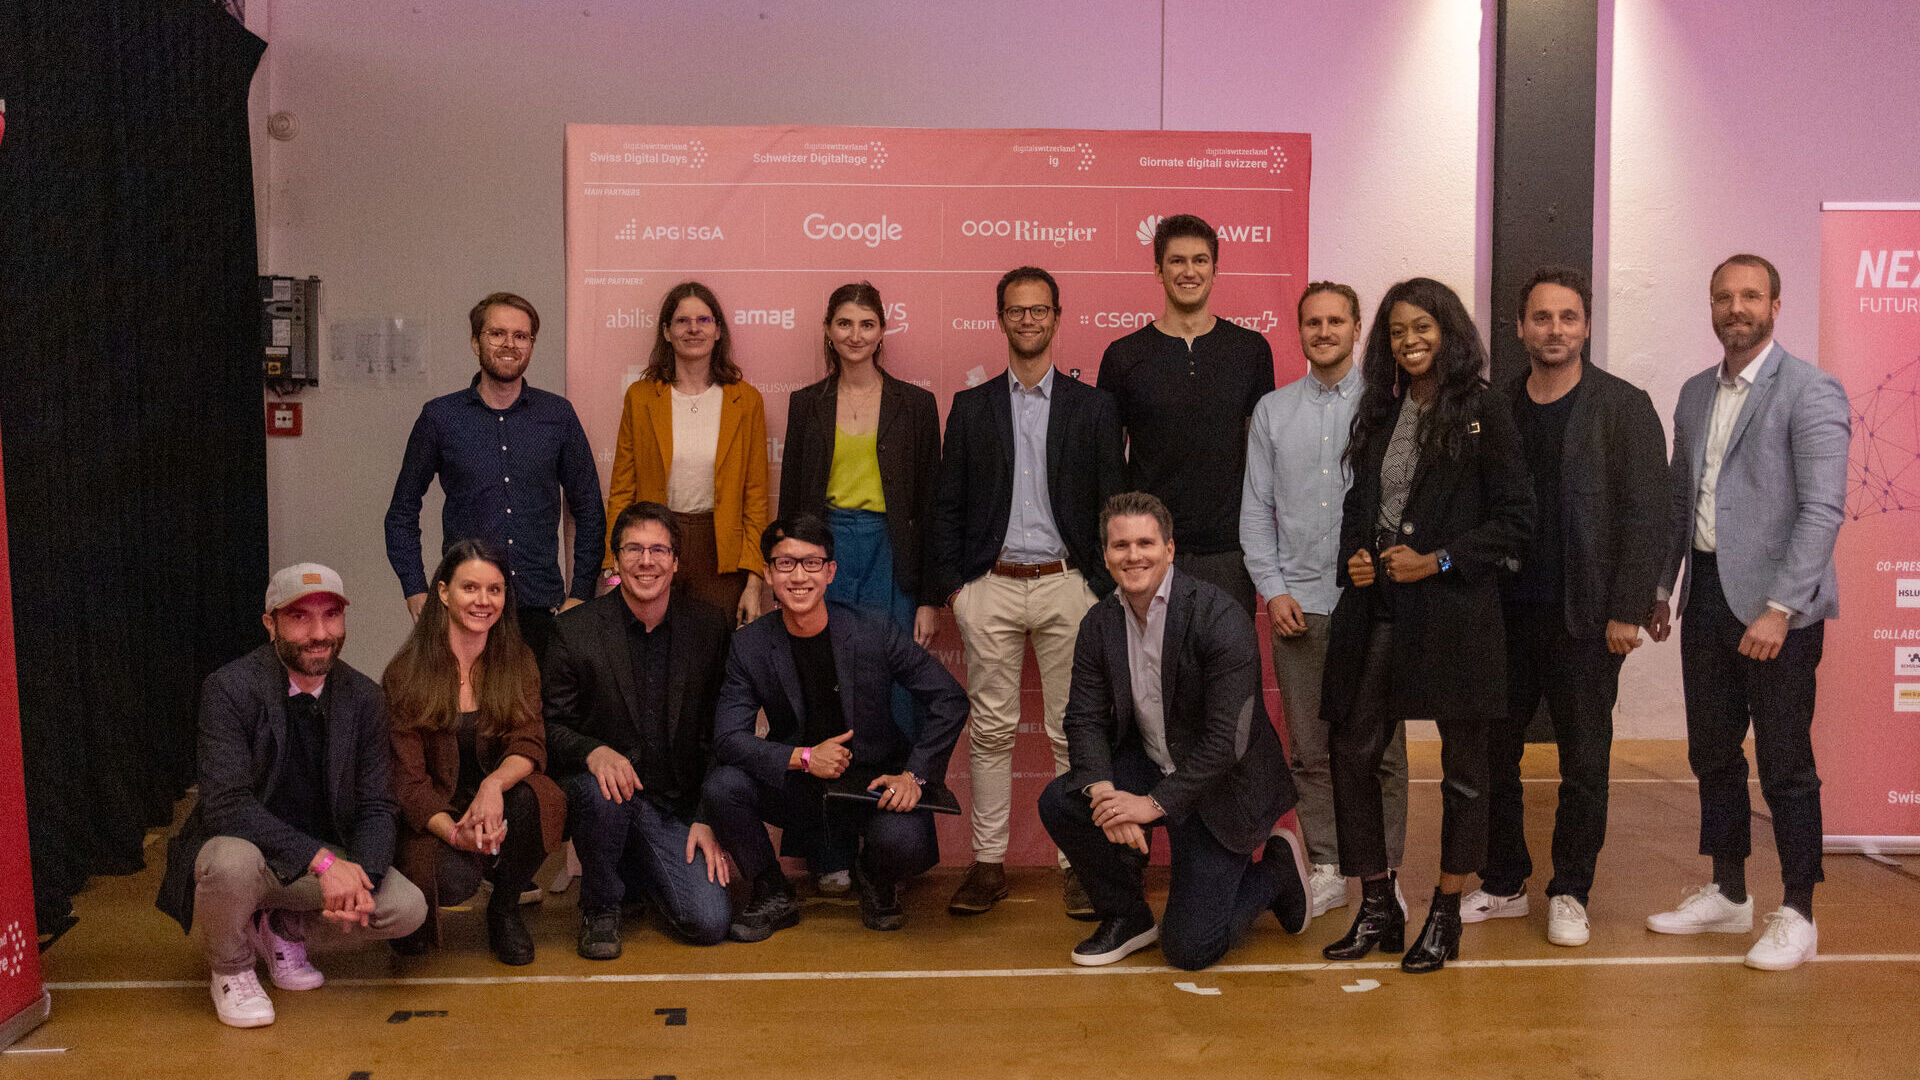 Swiss Digital Days: 2022월 27일 추크(Zug)의 Freiruum에서 열린 "Swiss Digital Days" XNUMX의 최종 행사: viboo의 승리로 "Greentech Startup Battle" 이니셔티브 시상식